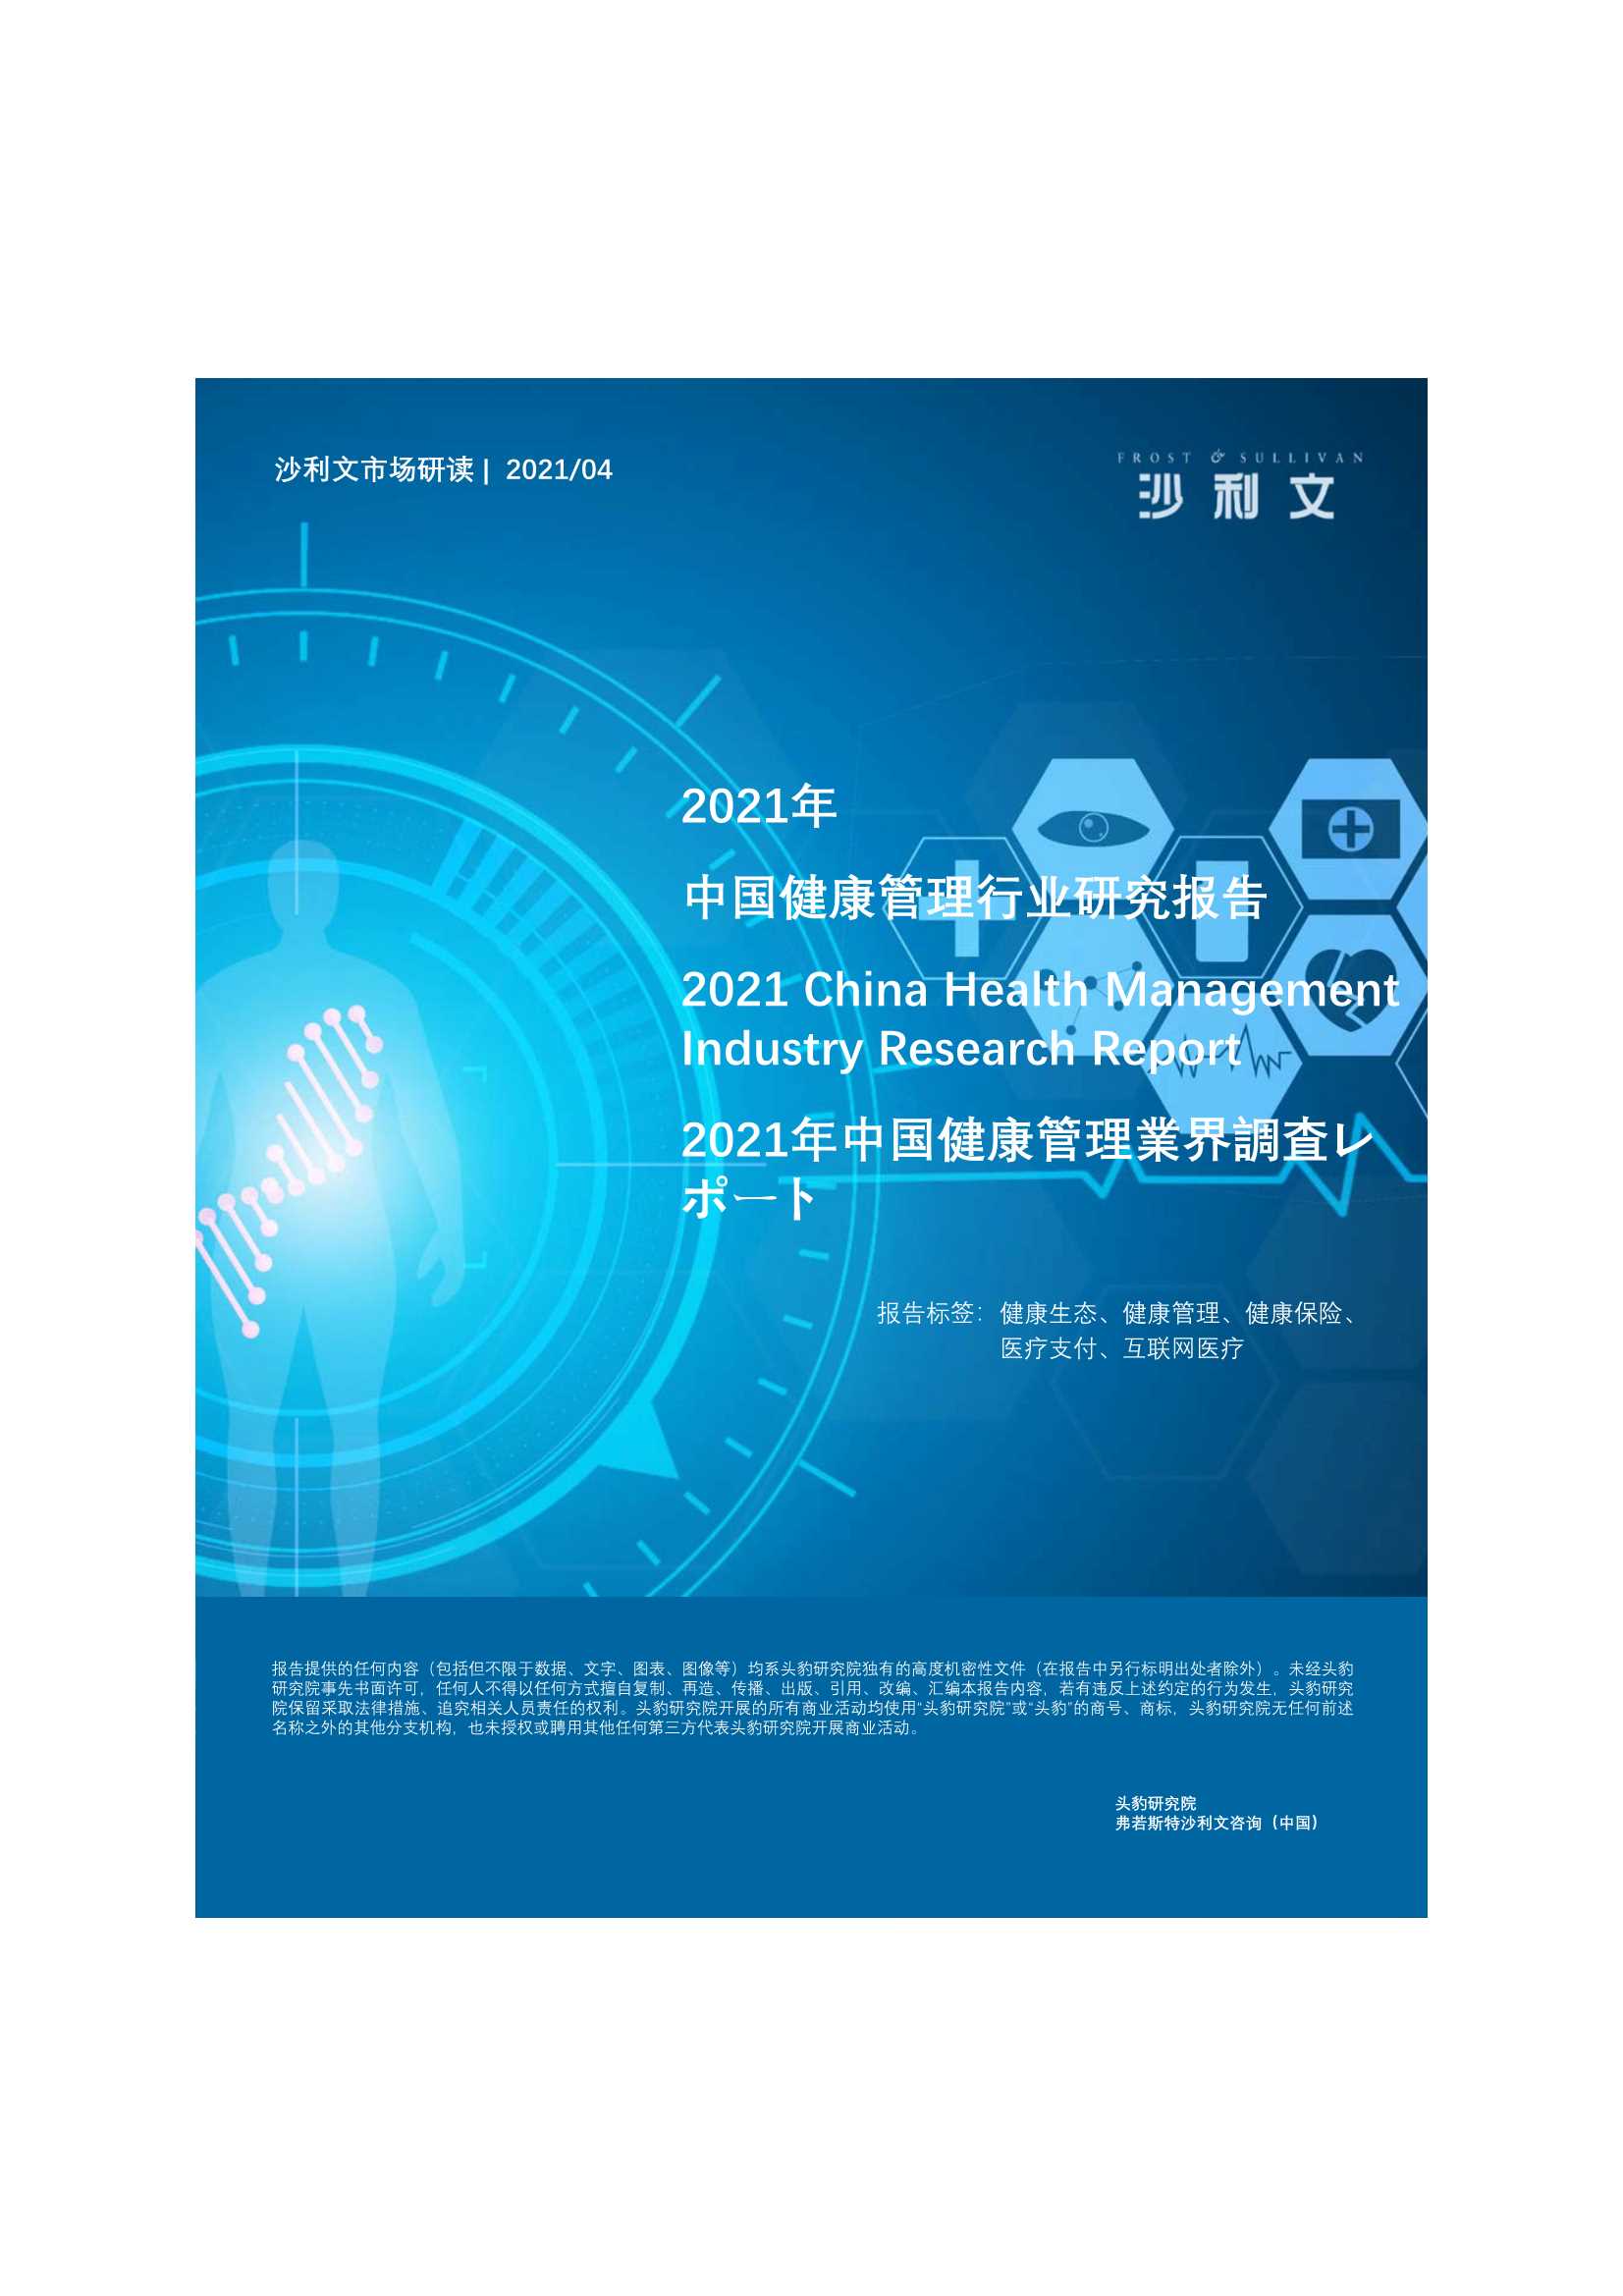 弗若斯特沙利文-2021年中国健康管理行业研究报告-2021.04-31页